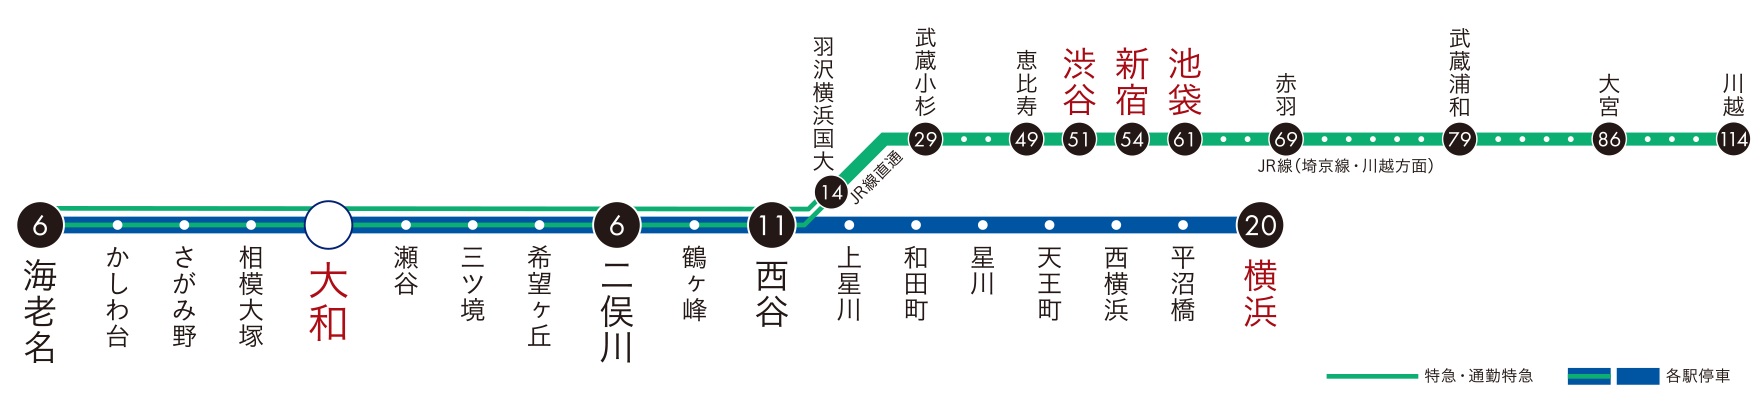 「大和」は相鉄線特急停車駅。
JRとの直通運転で新宿・渋谷へも軽快に。